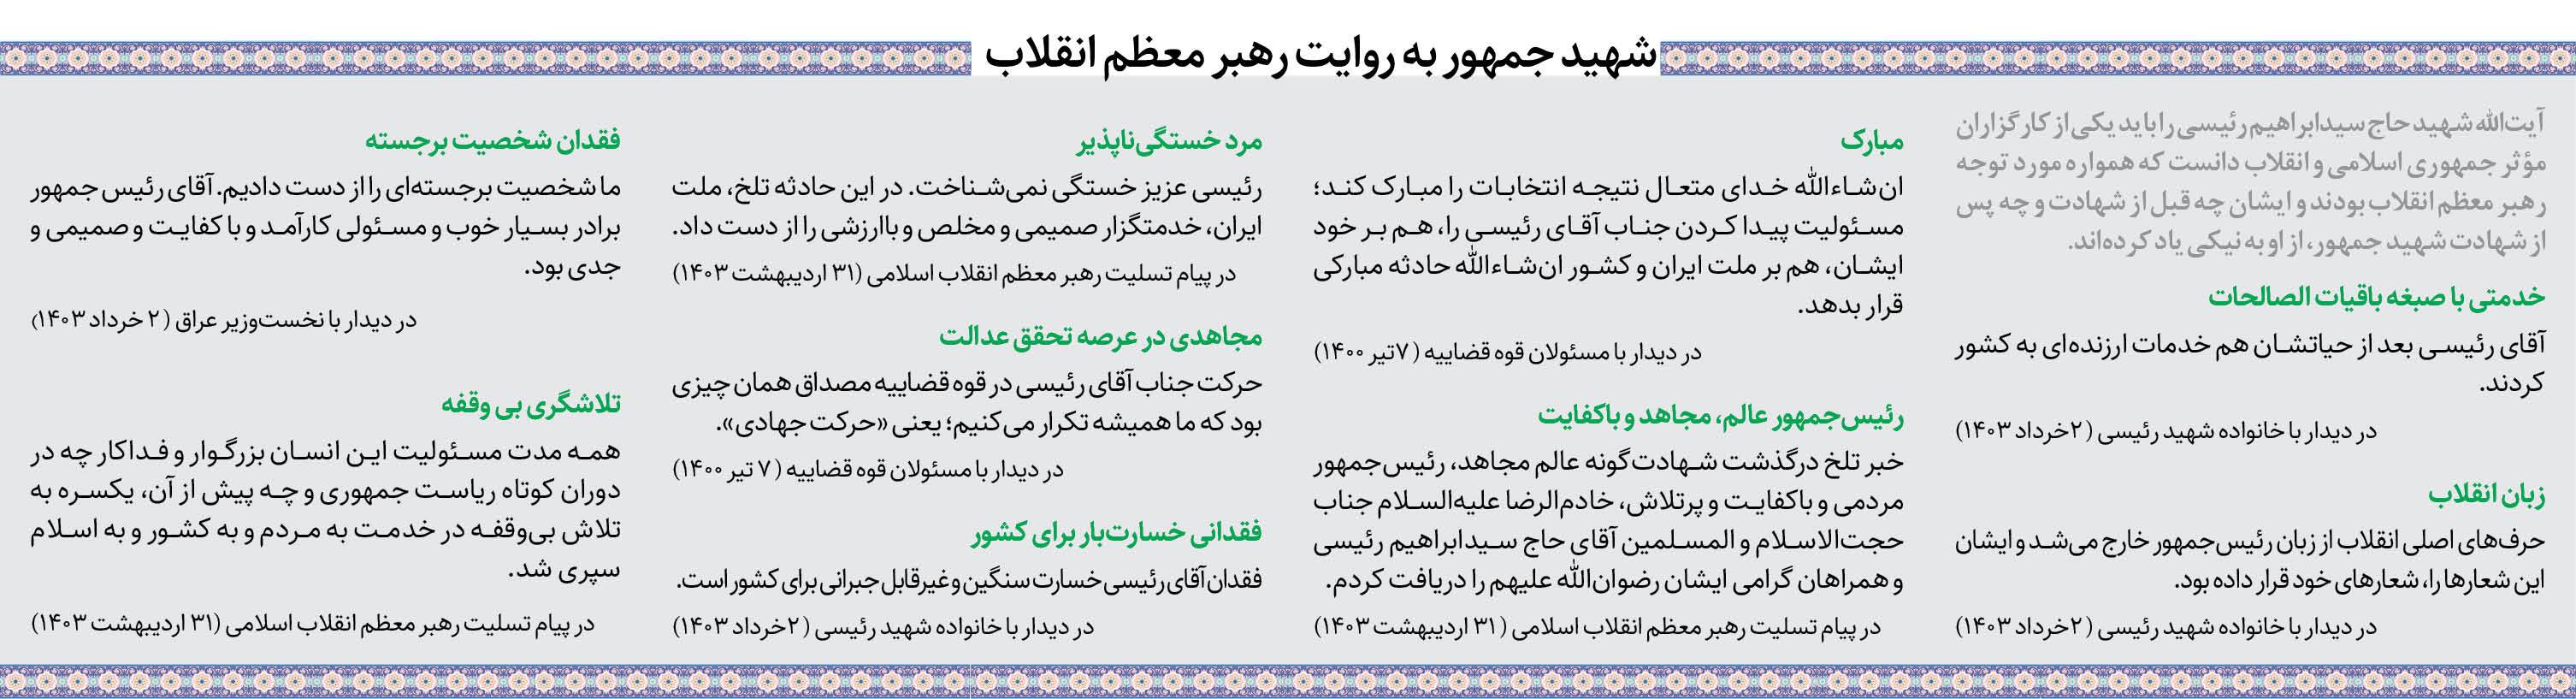 جهان پیام مردم ایران در روز شهید جمهور را شنید